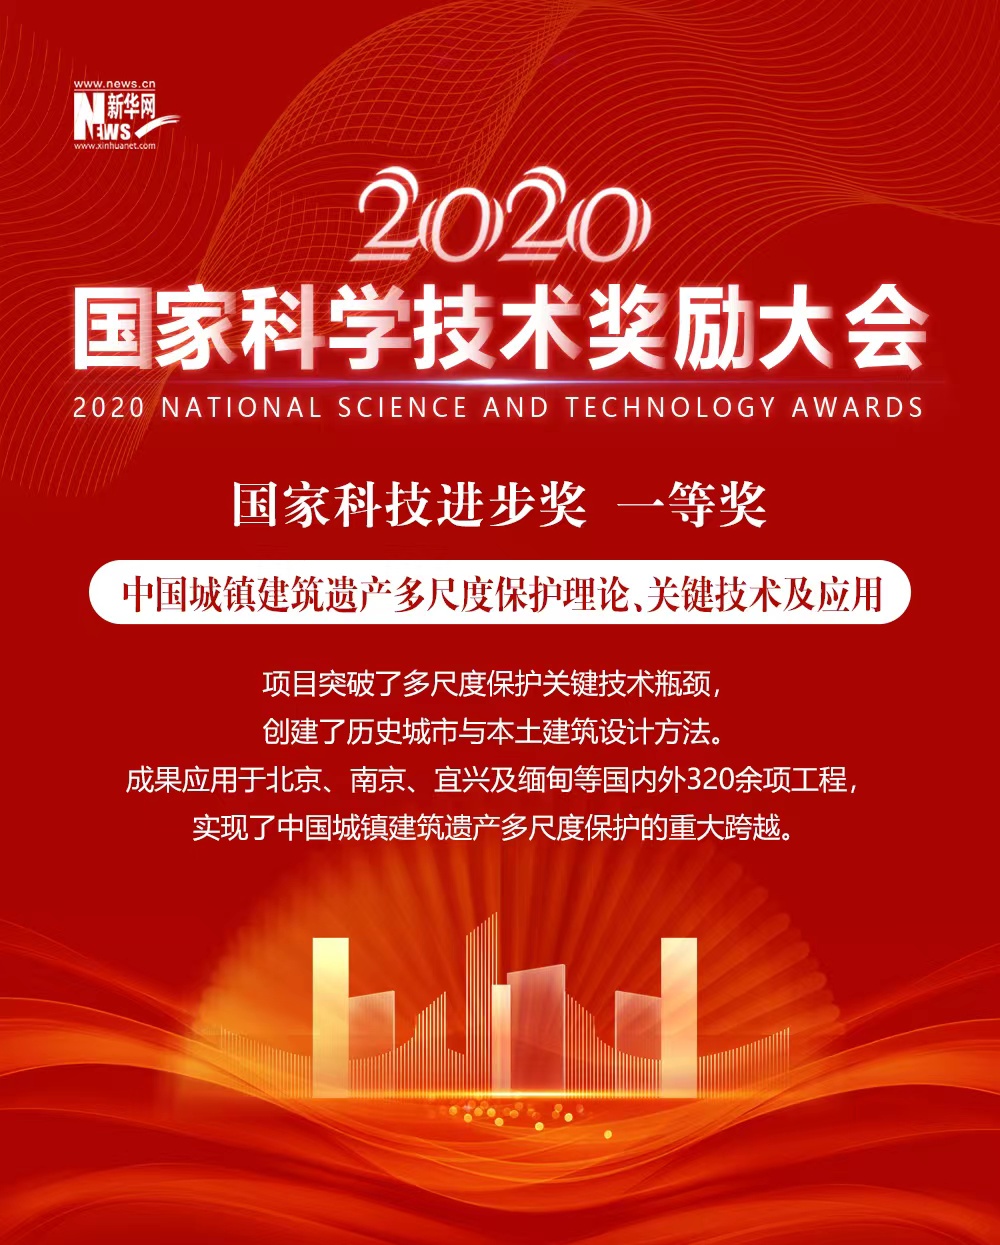 2020年度国家科技奖获奖项目巡礼